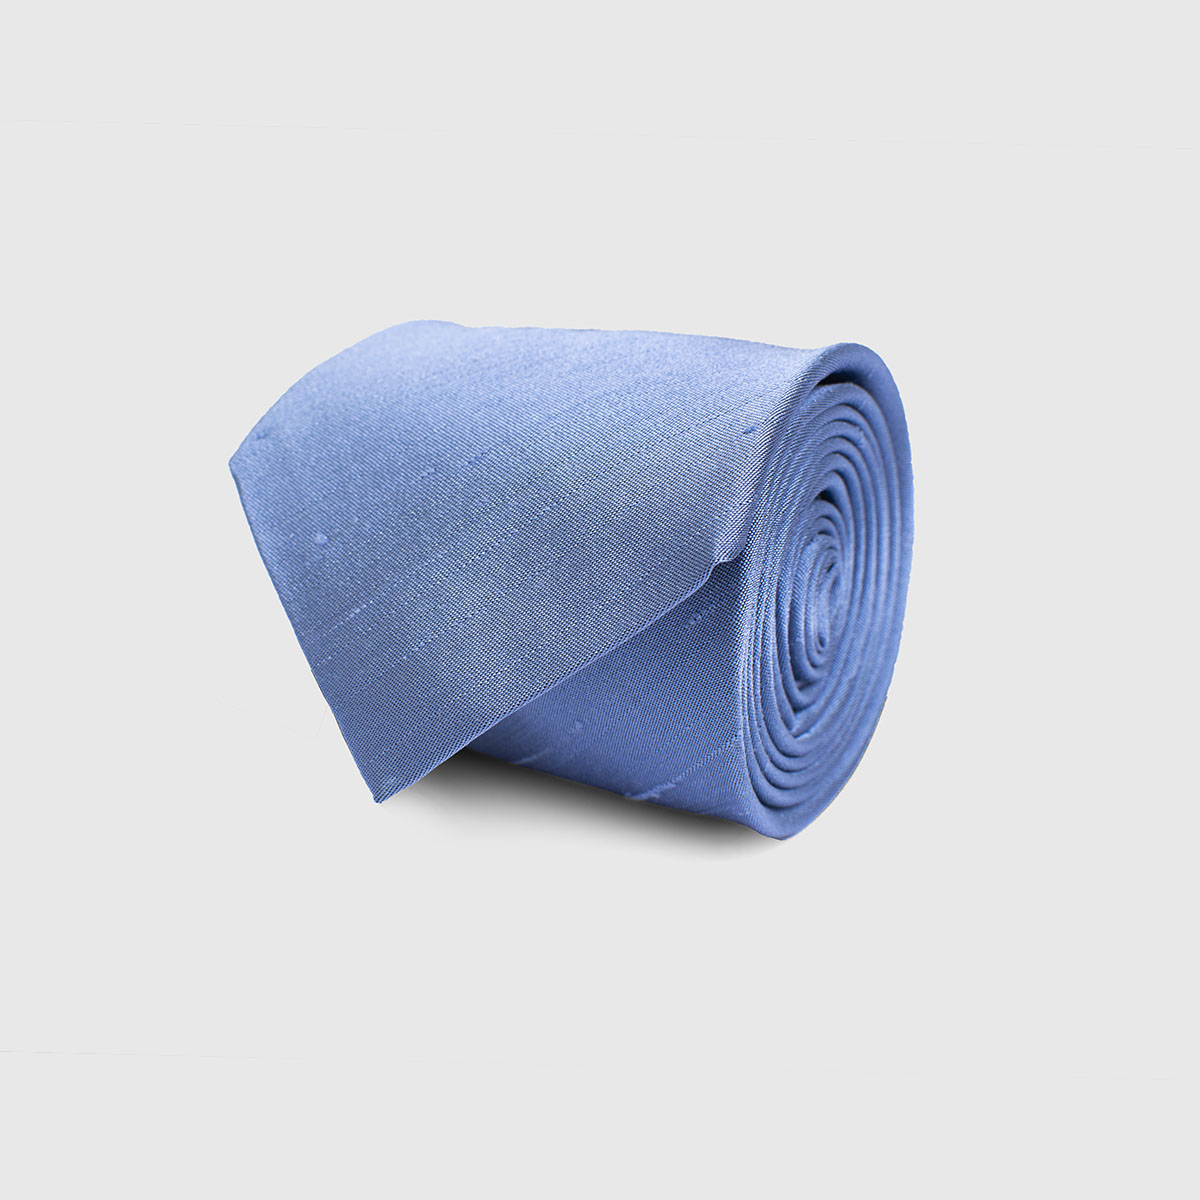 5-Fold Tie light blue Fumagalli 1891 on sale 2022